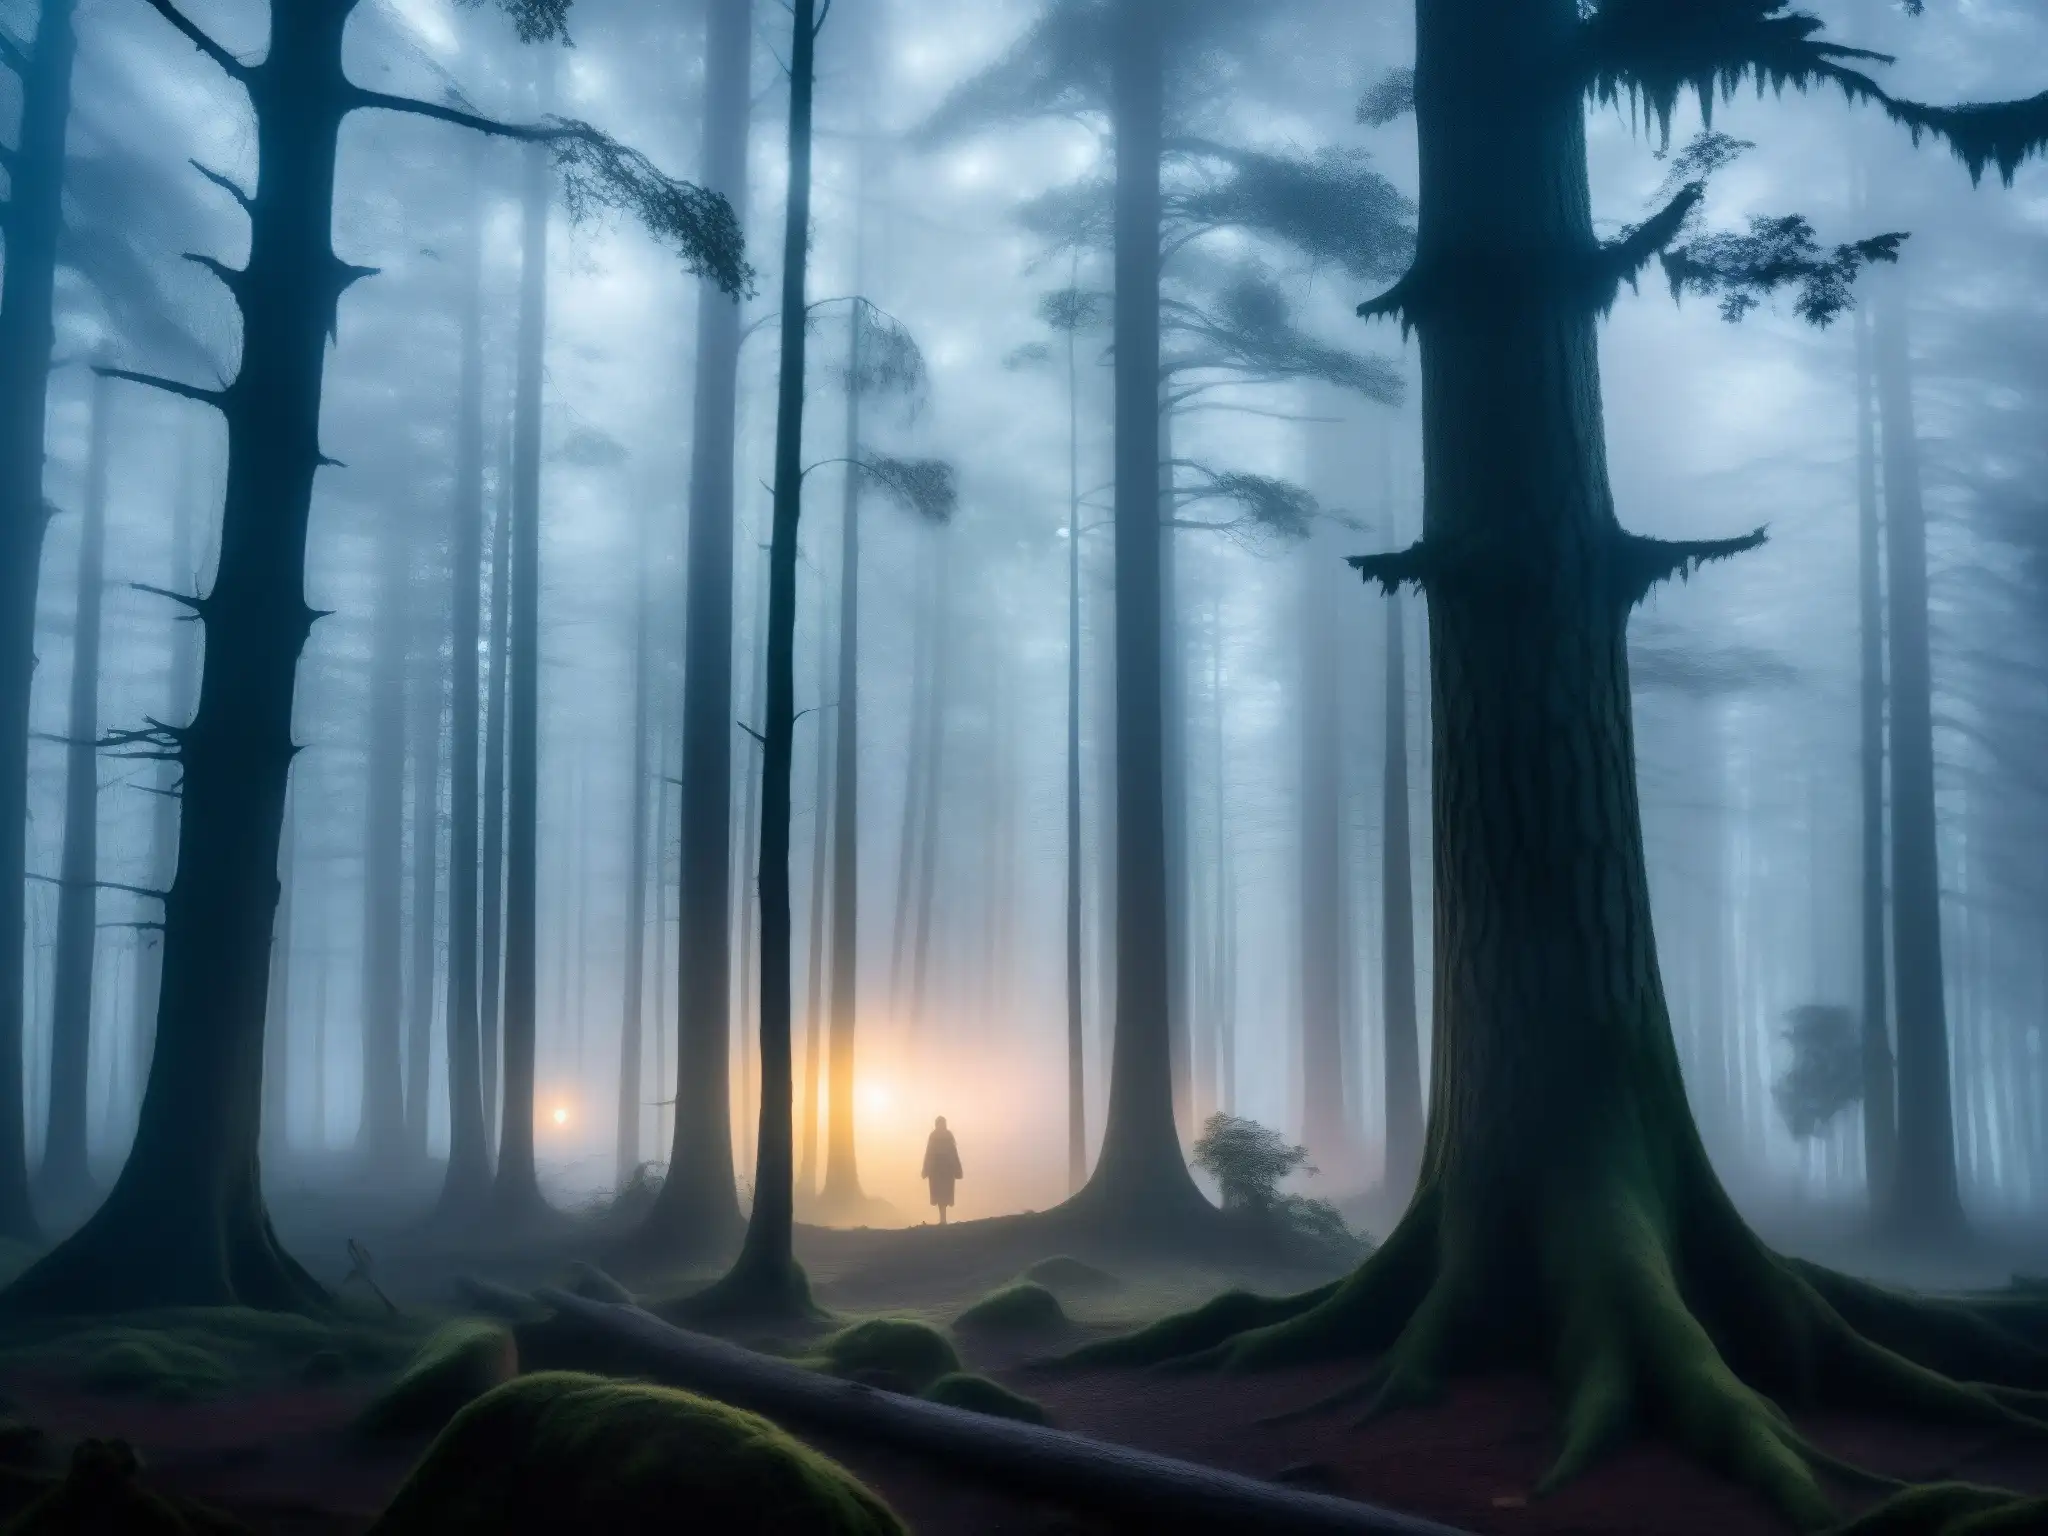 Una imagen detallada de un bosque brumoso iluminado por la suave luz de la luna, con figuras sombrías entre los árboles